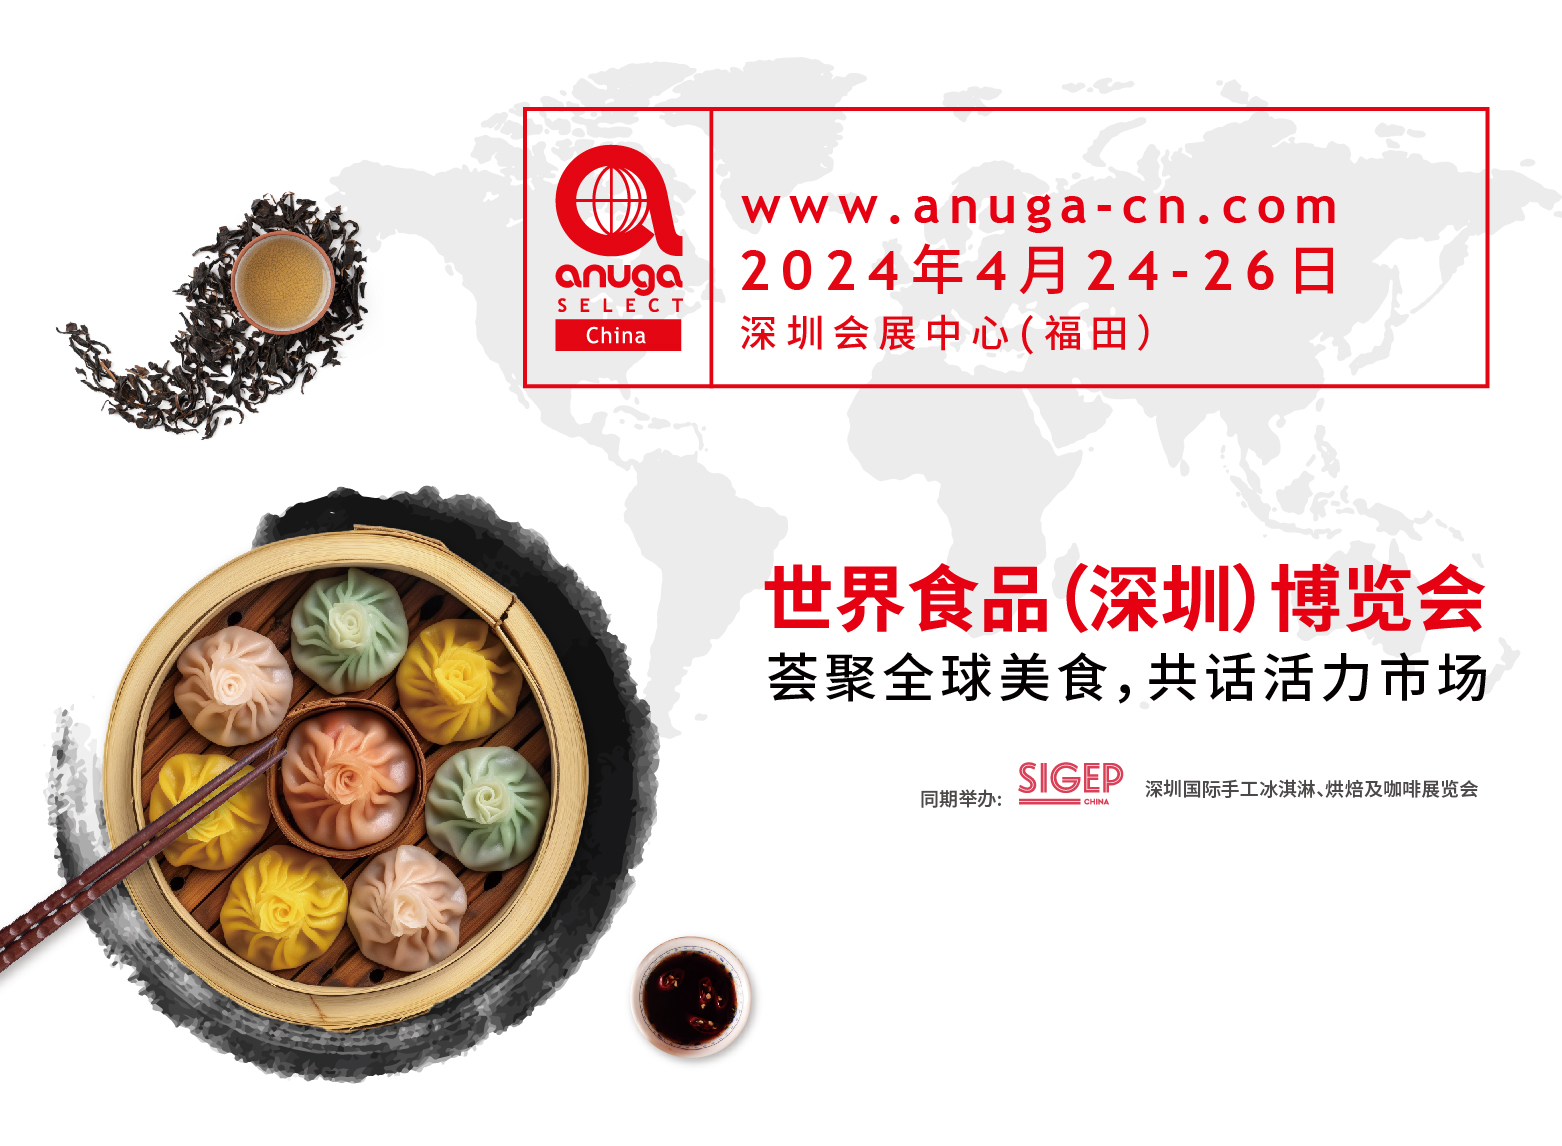 新时间！新地点！Anuga Select China 2024 世界食品（深圳）博览会将移师深圳会展中心（福田）举办！